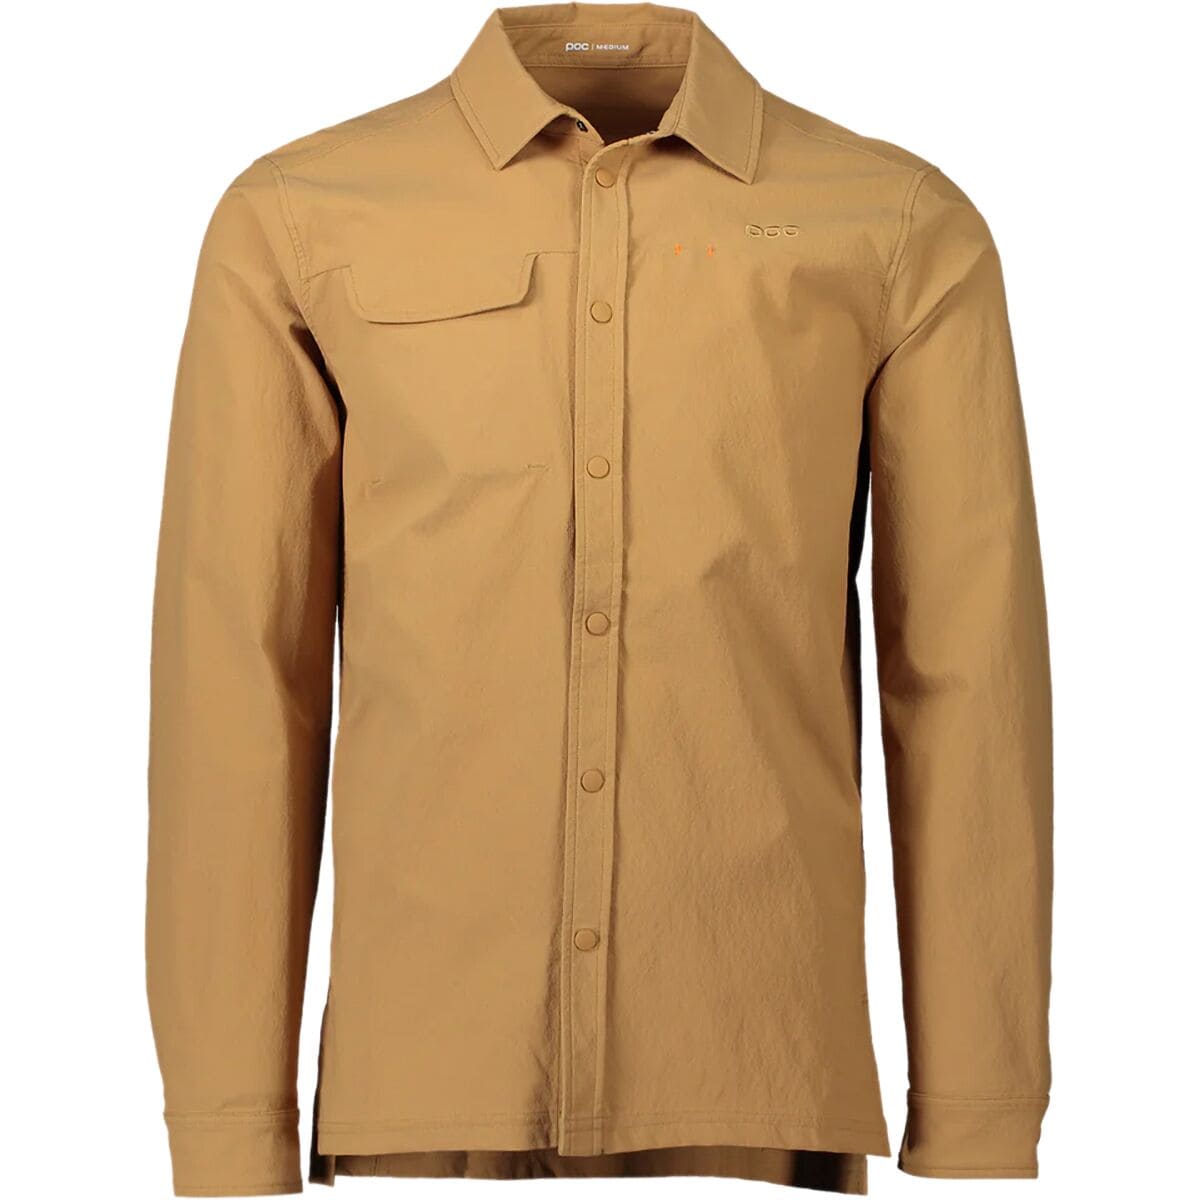 POC Rouse Shirt - Men's Aragonite Brown, S